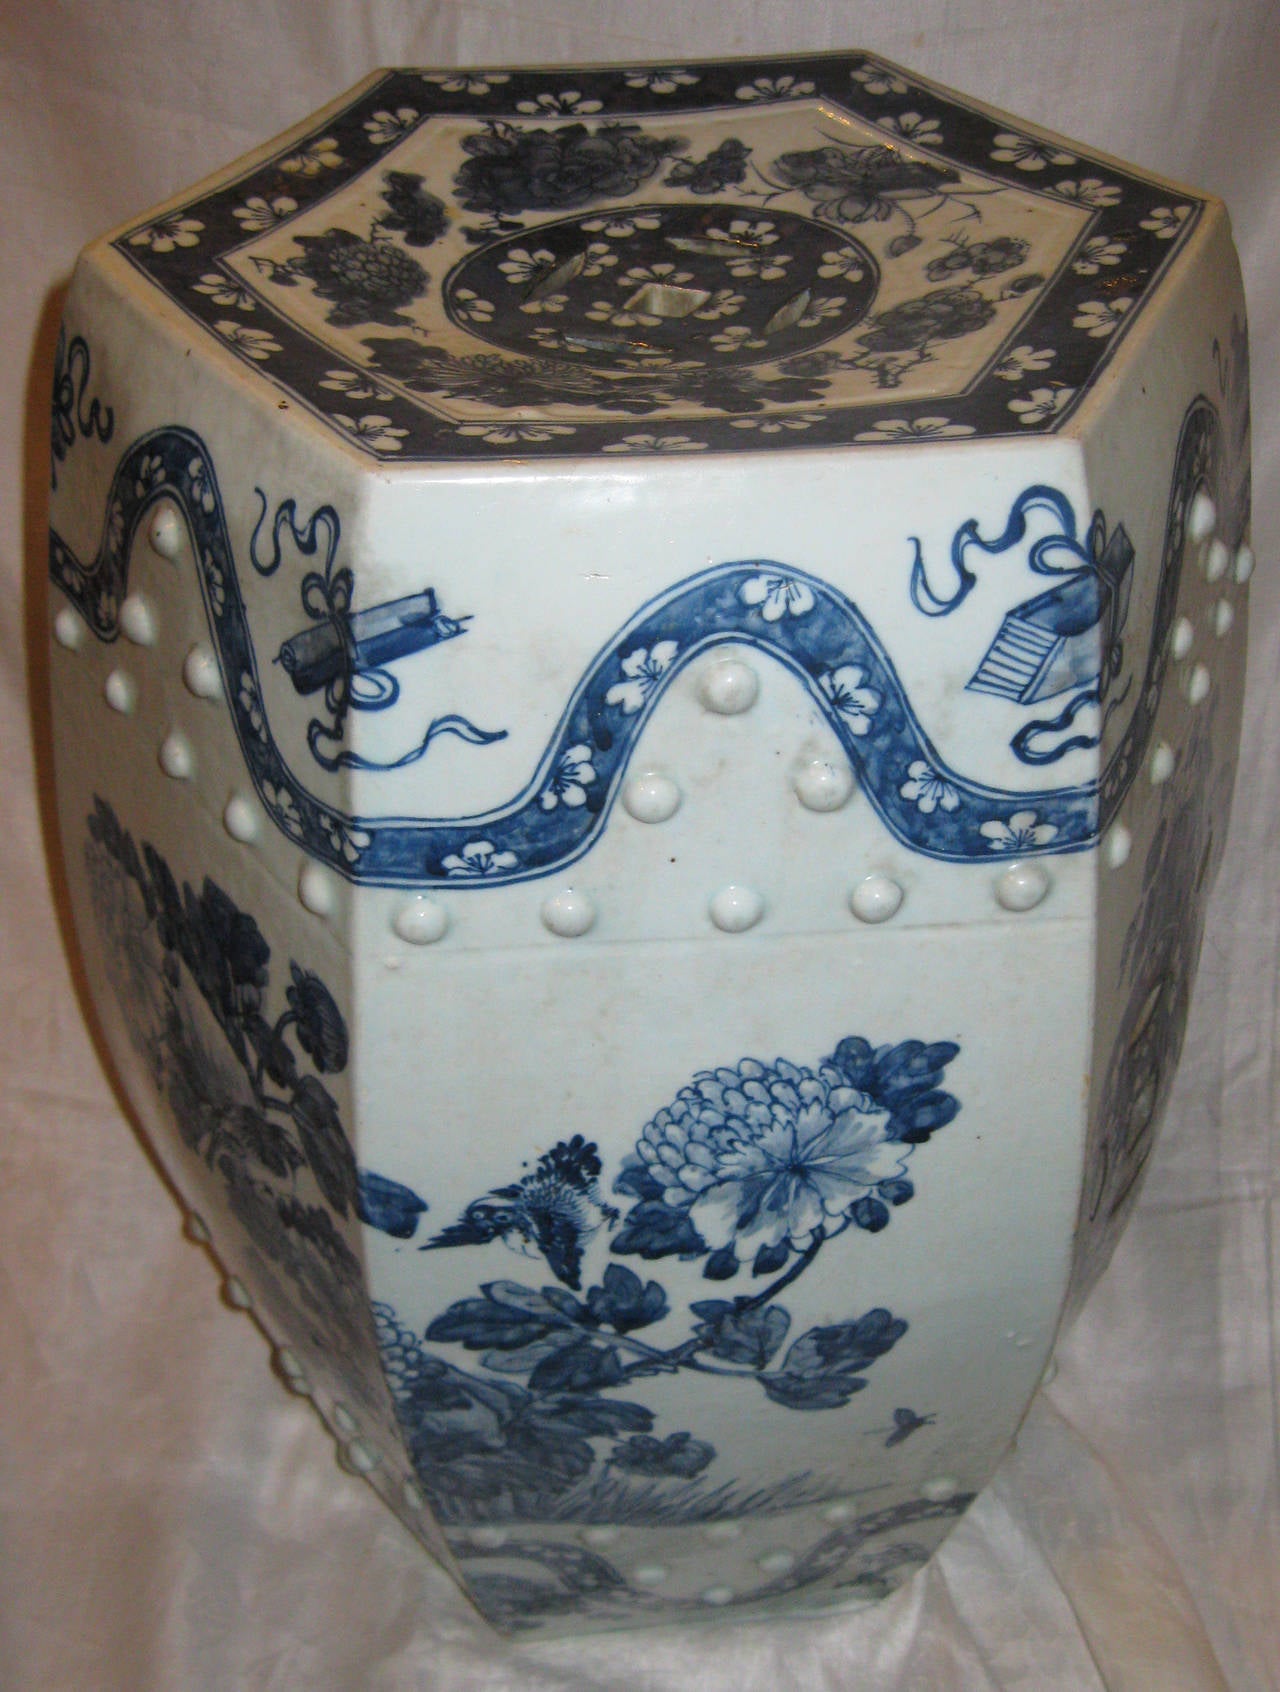 Sechseckiger chinesischer Gartenstuhl im Nanking-Stil aus blau-weiß glasiertem Porzellan. Zu den Merkmalen gehören eine durchbrochene Oberseite und Seiten, geformte Reliefpunkte und eine sehr raffinierte Ausführung des Blumenmusters, ein großer